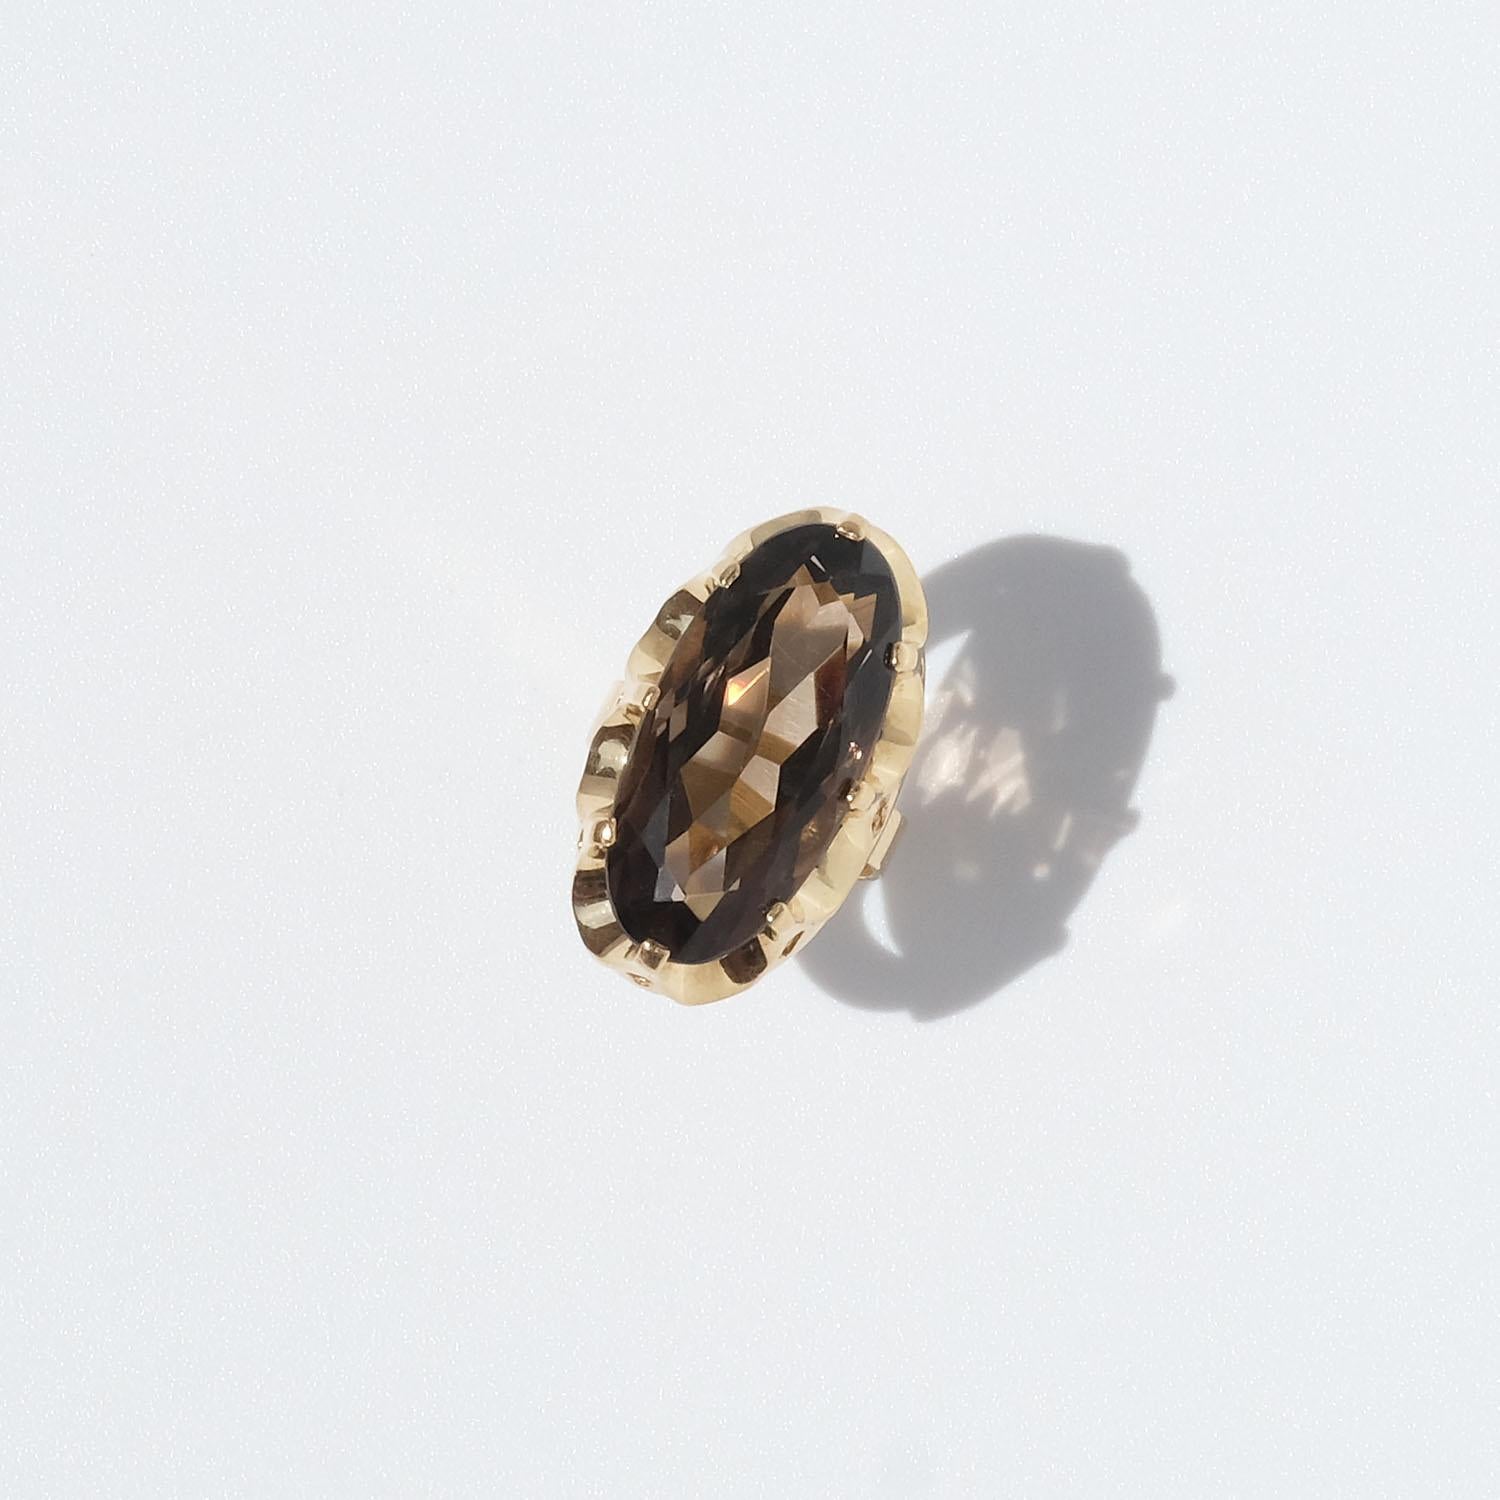 Dieser Ring aus 18 Karat Gold ist mit einem ovalen, facettierten Rauchquarz geschmückt. Der Rauchquarz wird von einer wunderschönen Fassung gehalten, die einer Königskrone ähnelt. 
Ein Cocktailring, der diesen Namen auch verdient. Er ist markant und